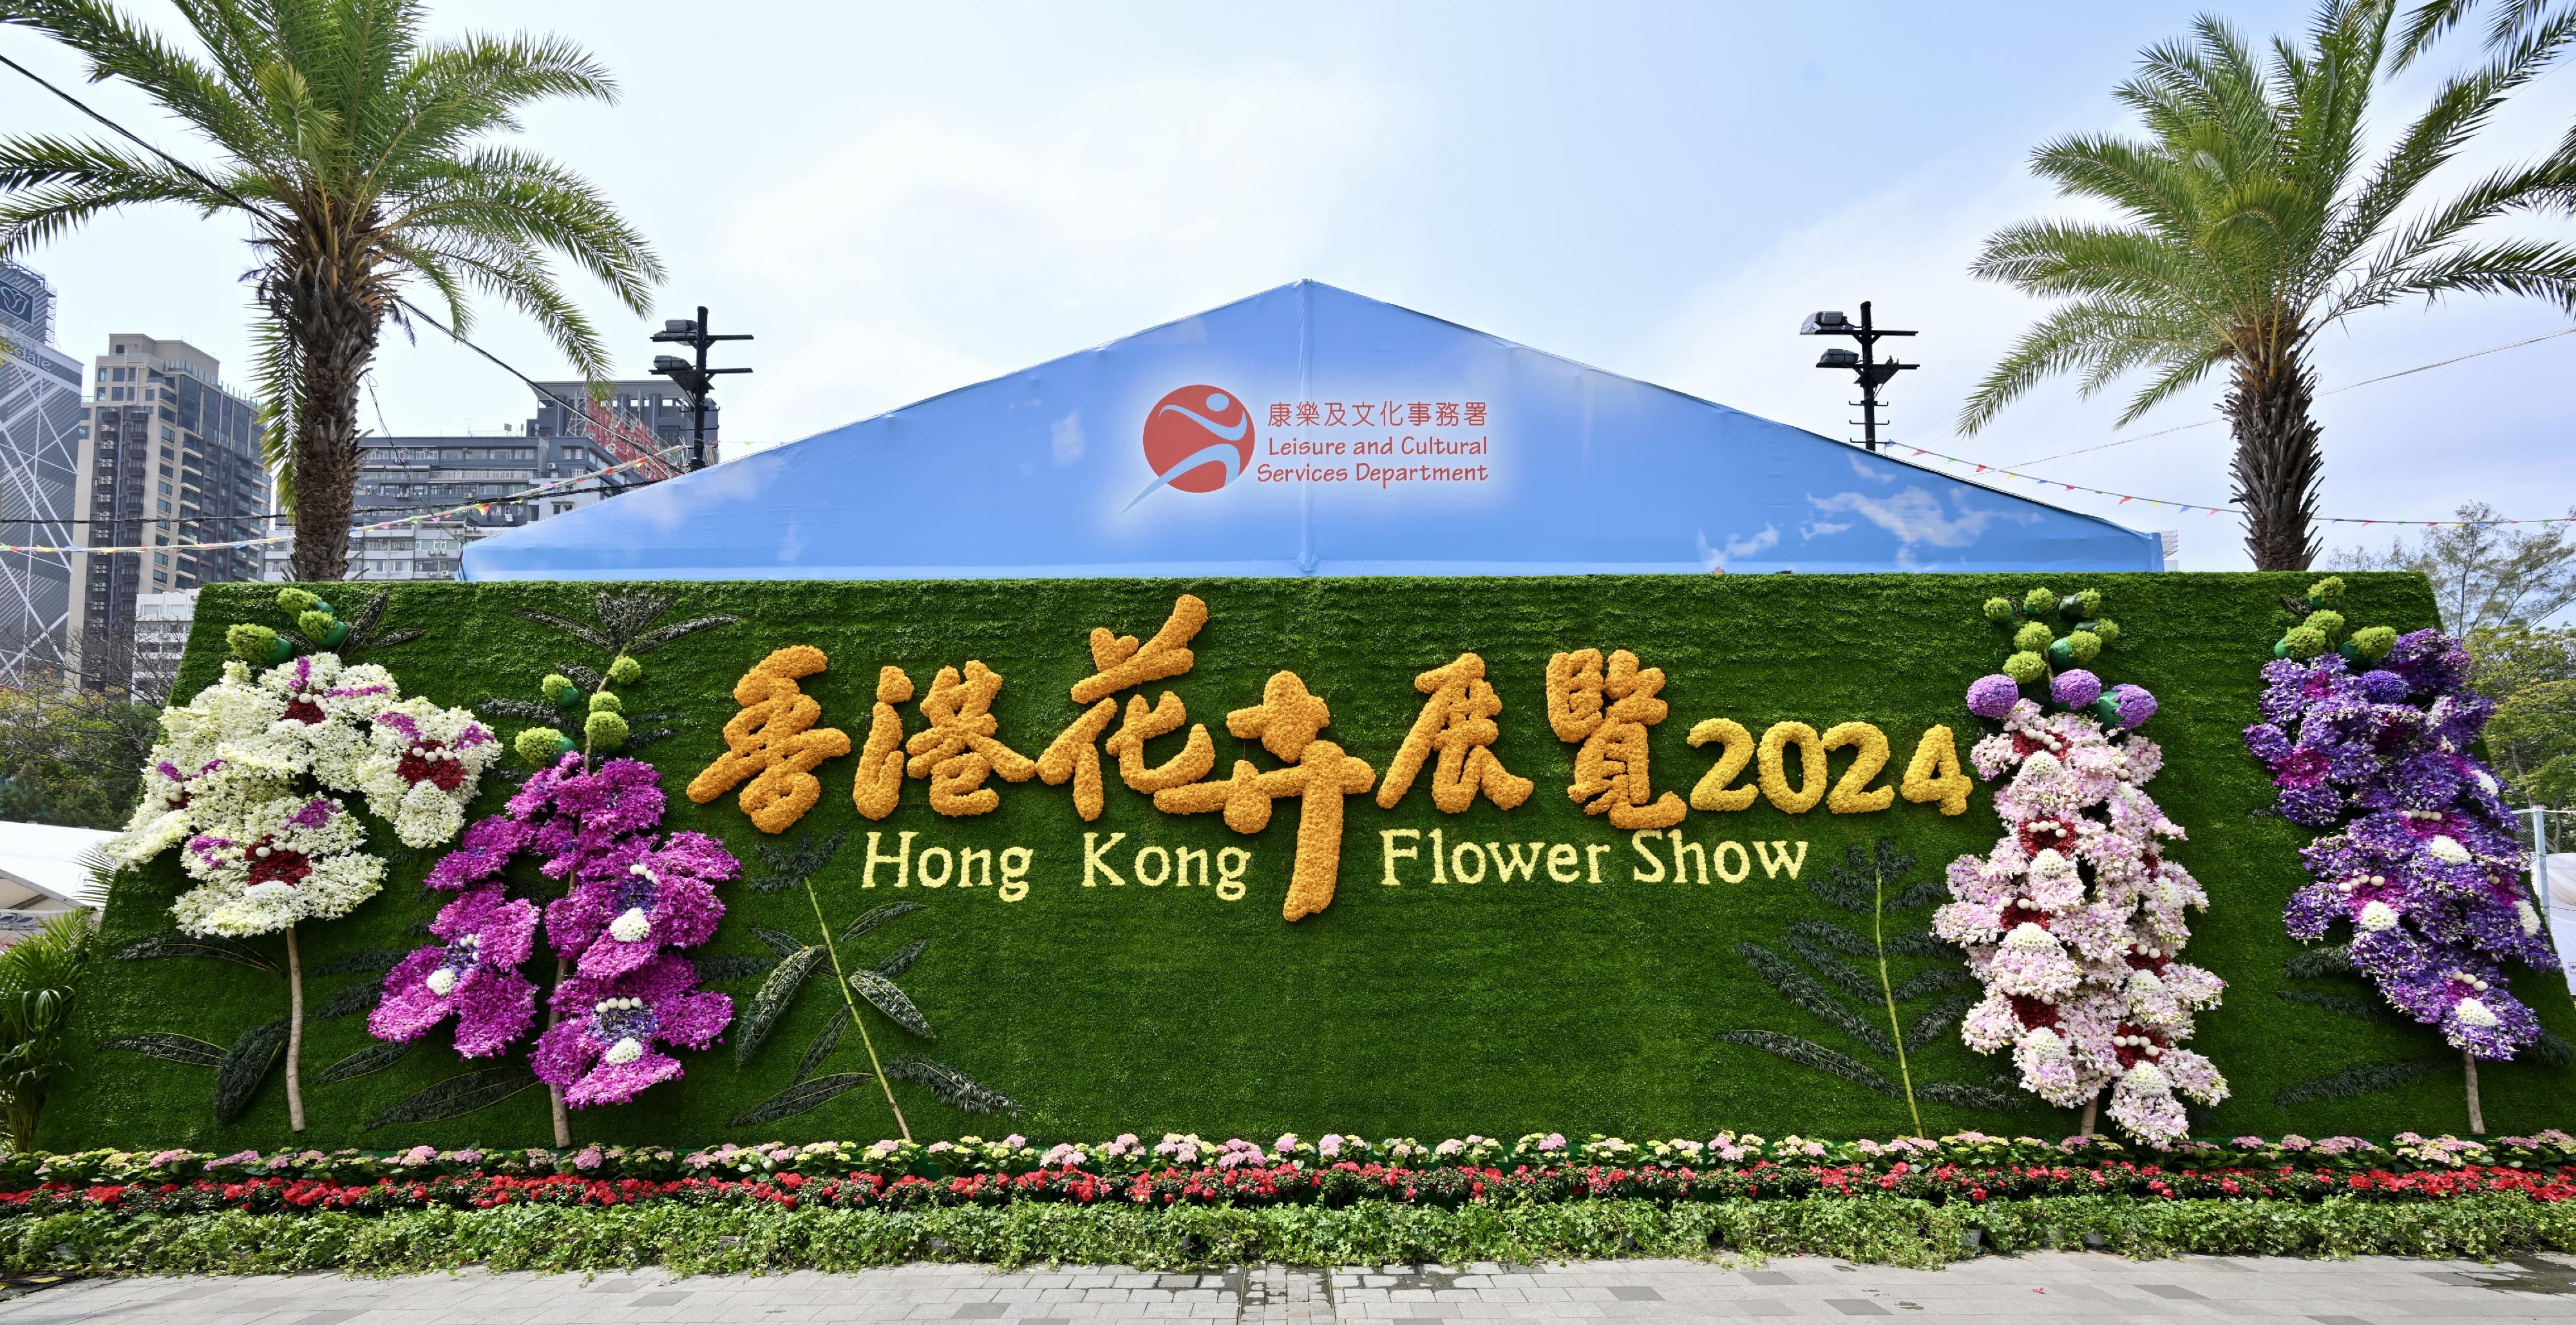 二○二四年香港花卉展覽（花展）明日（三月十五日）至三月二十四日在維多利亞公園舉行。今年花展的主題花是香彩雀，以「雀躍全城」為主題。圖示鮮艷奪目的立體主題花花牆，由不同顏色的蘭花砌成四棵巨型香彩雀。